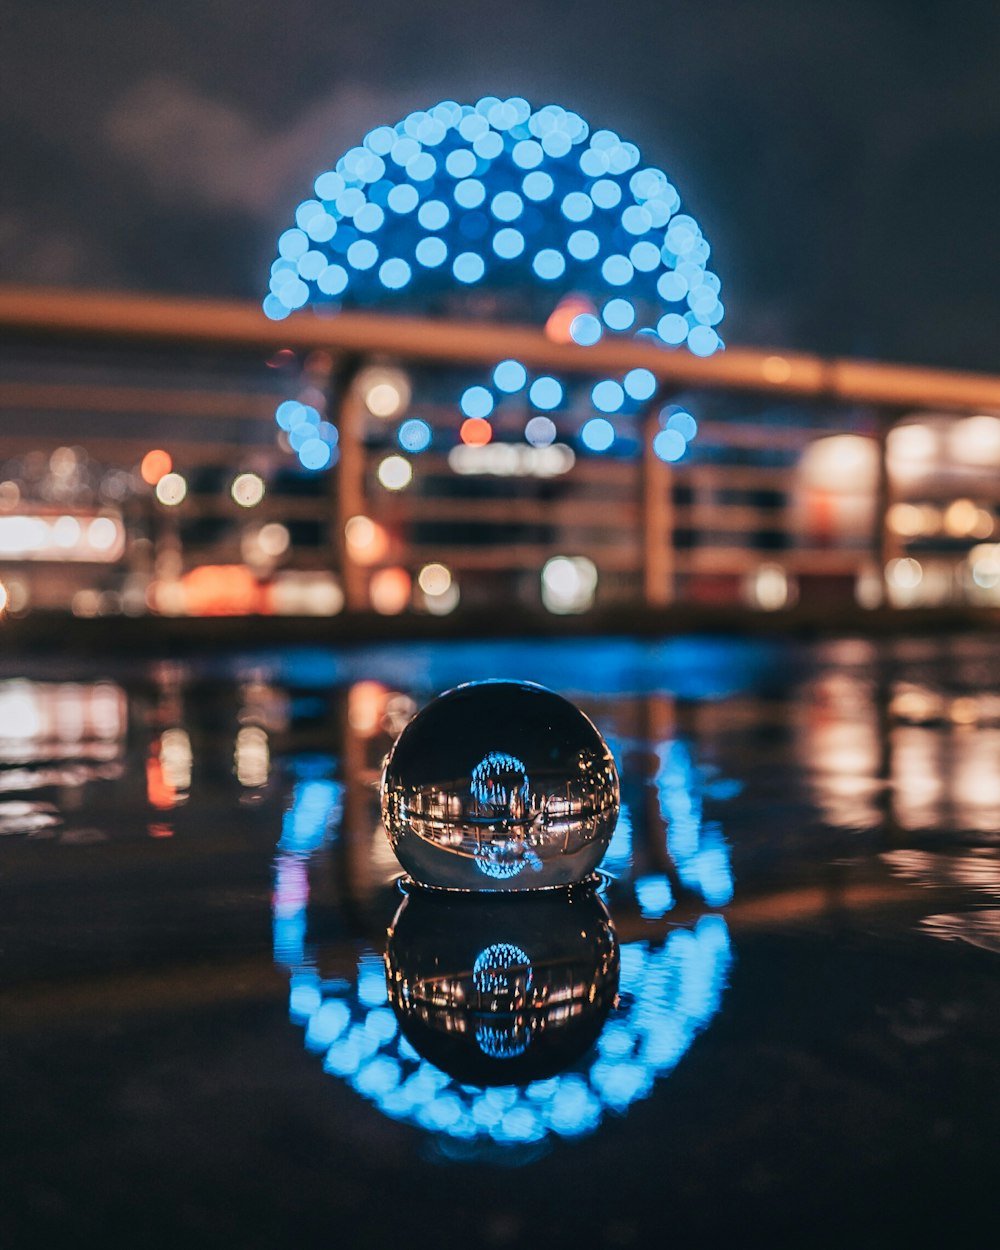 Photographie sélective de la boule d’eau avec le monument de la boule